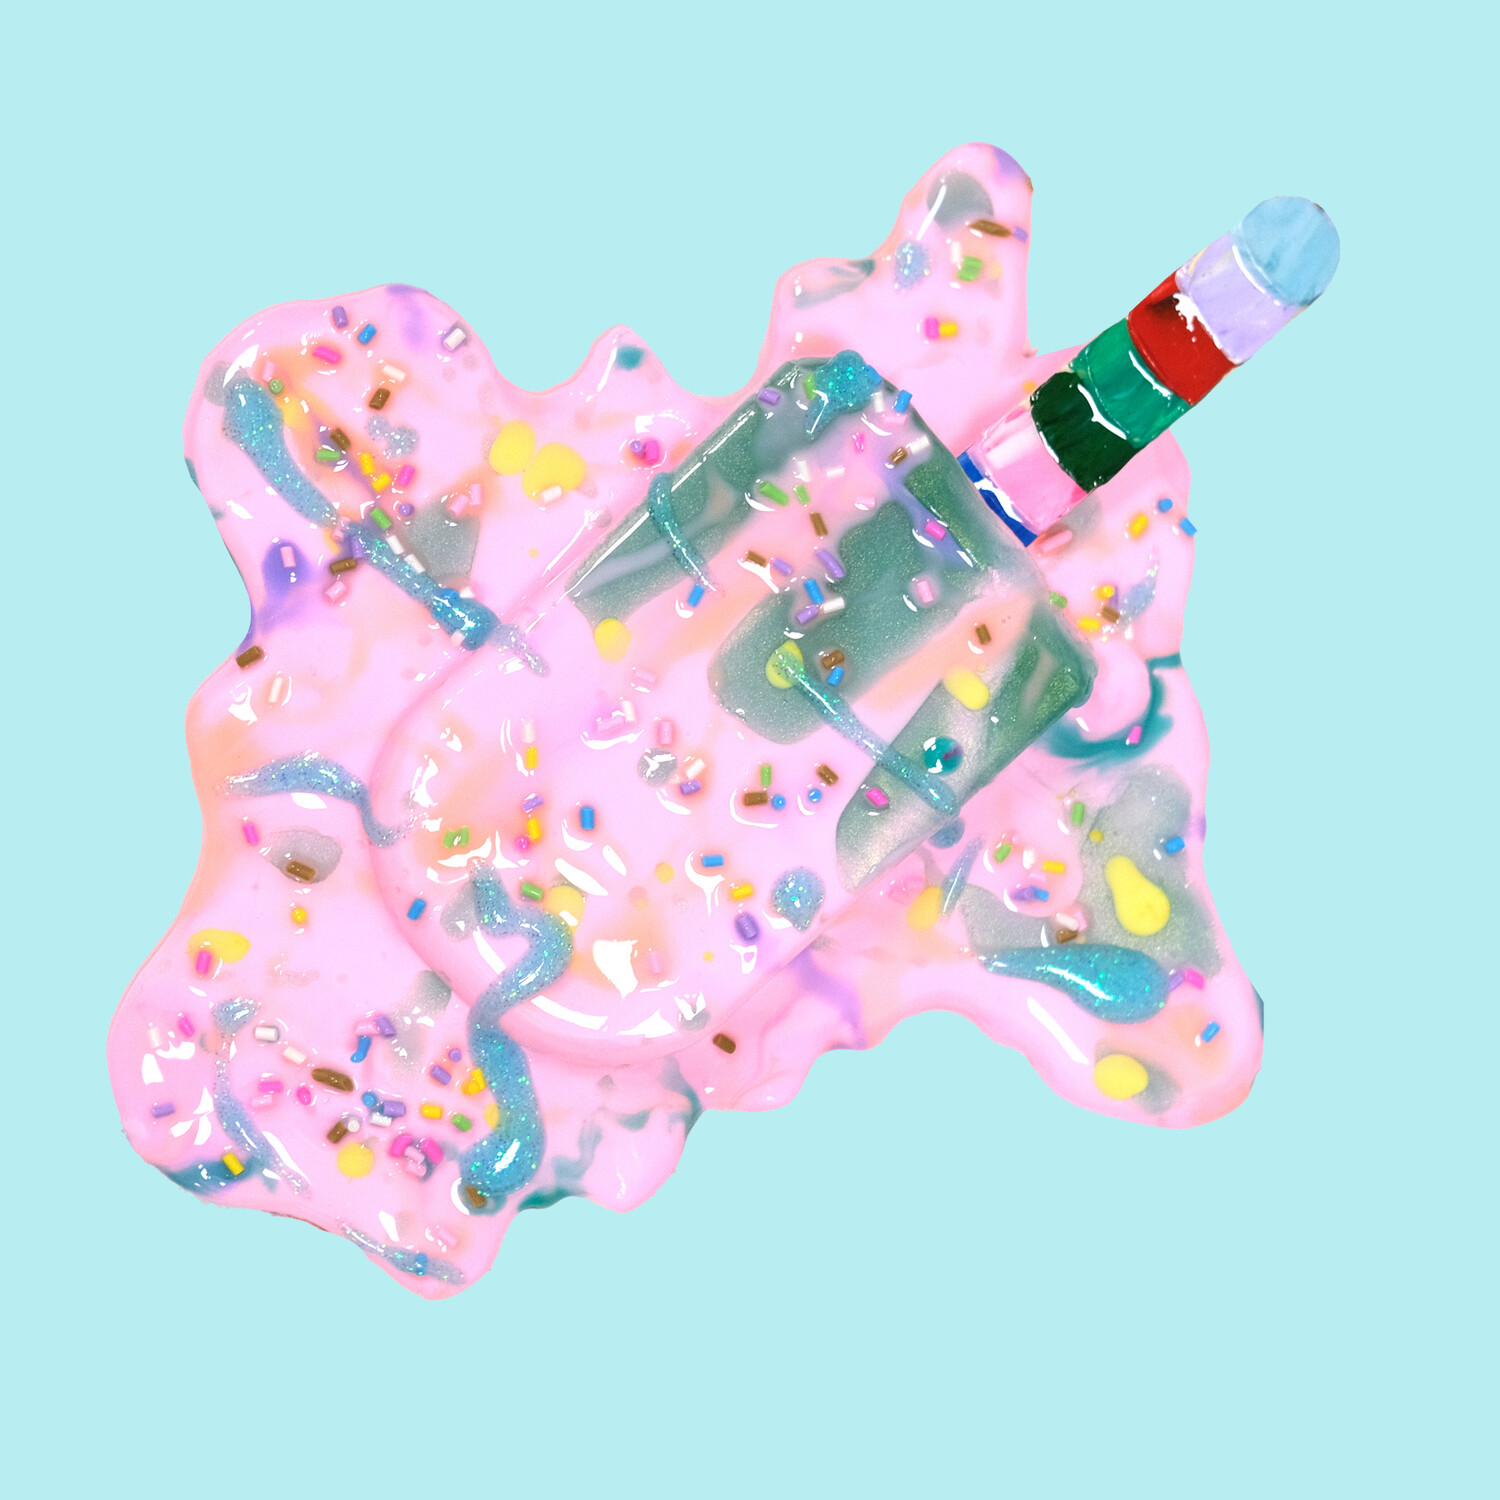 Melting Popsicle Art - Big Sprinkle Fiesta - Original Melting Pops